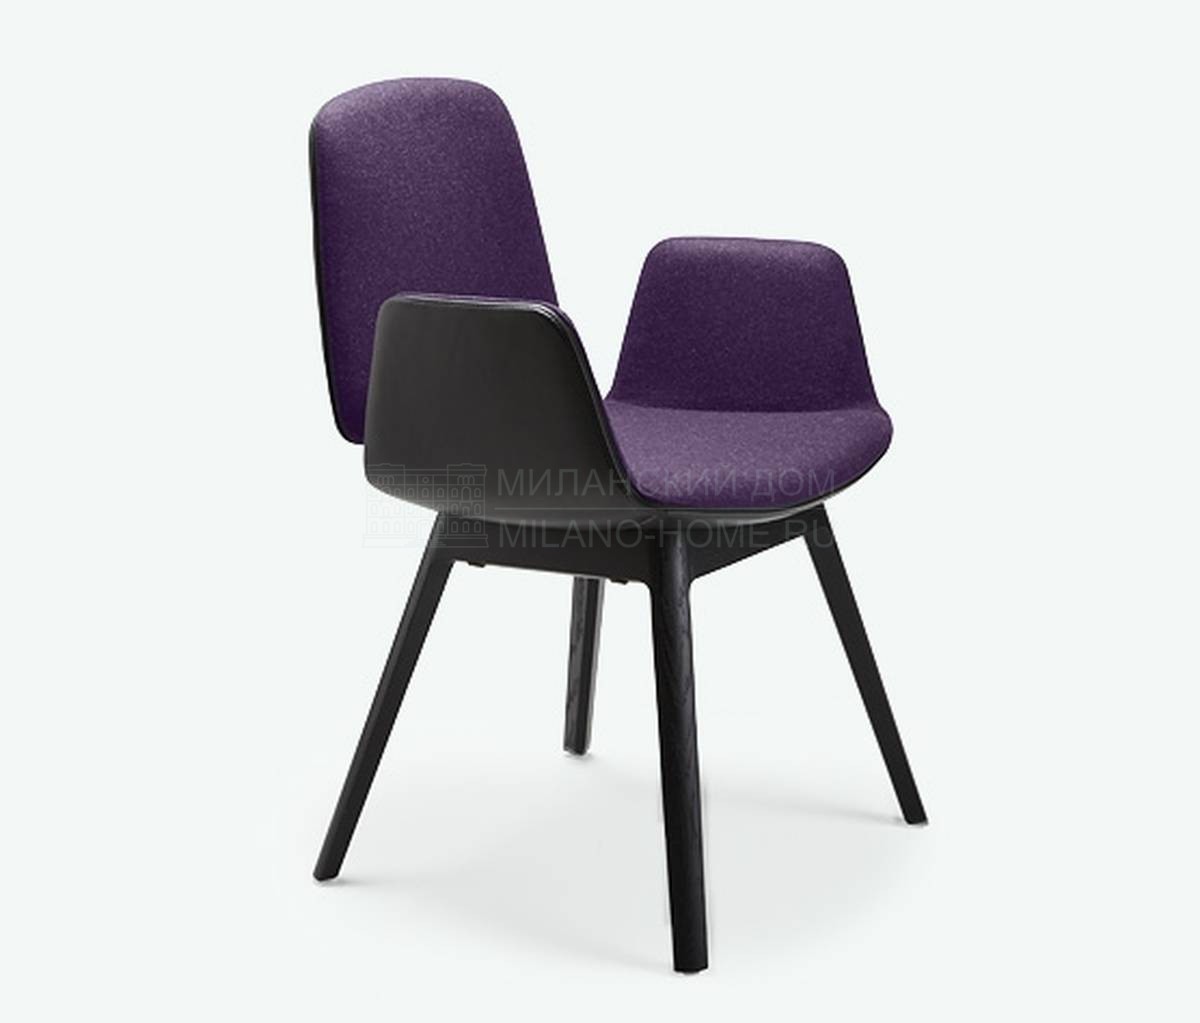 Полукресло Tilda armchair color из Германии фабрики FREIFRAU